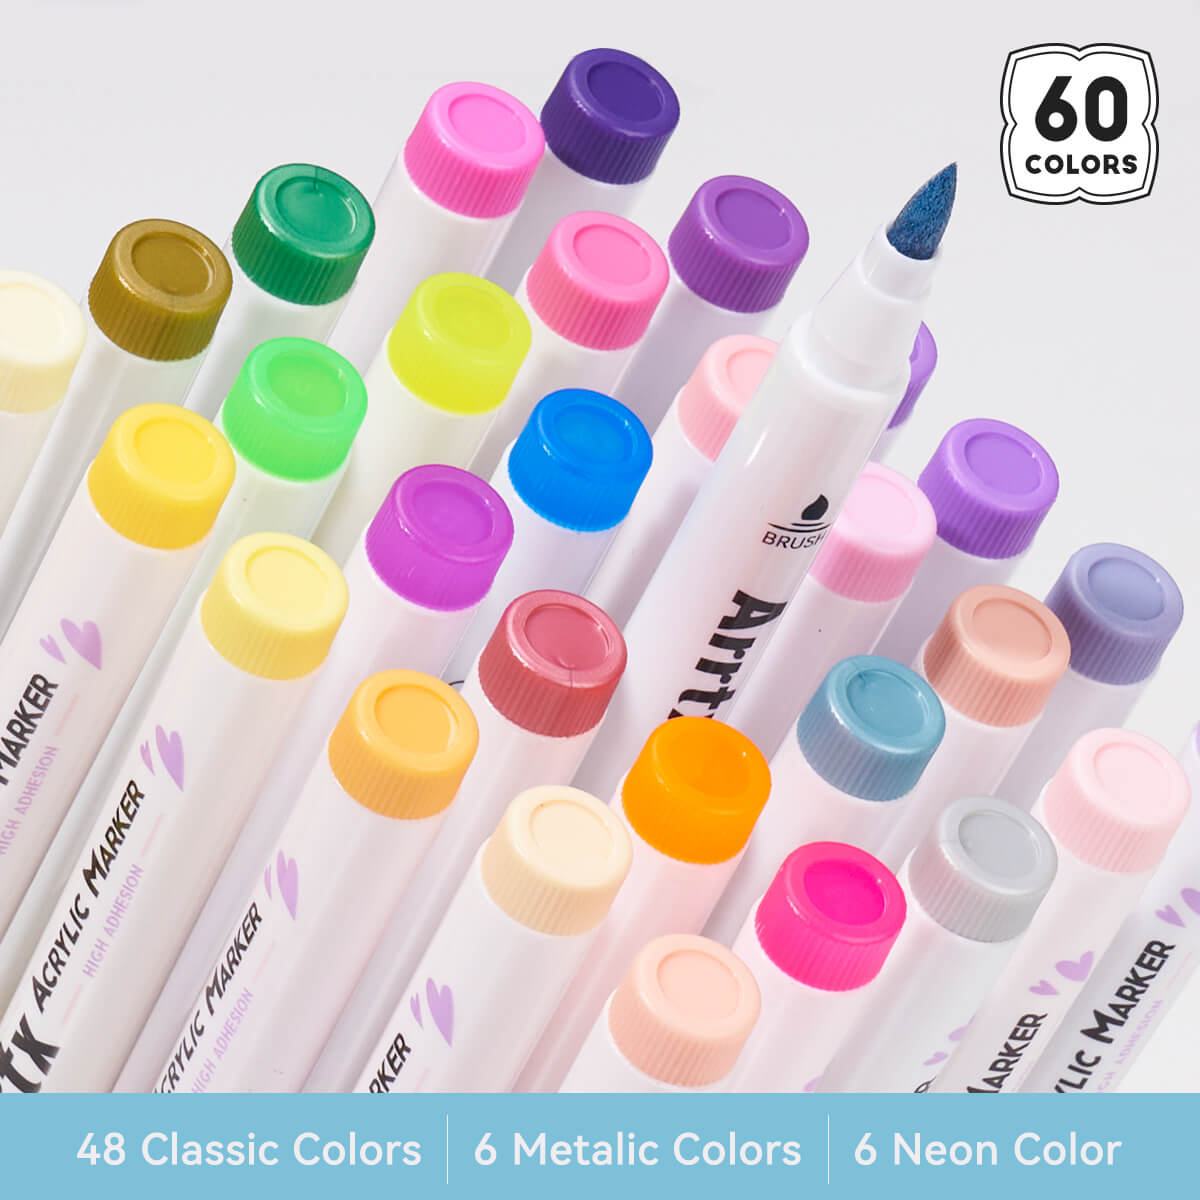 Arrtx – stylos à peinture, 60 couleurs, marqueur acrylique, pointe de pinceau, fournitures d'art 60A